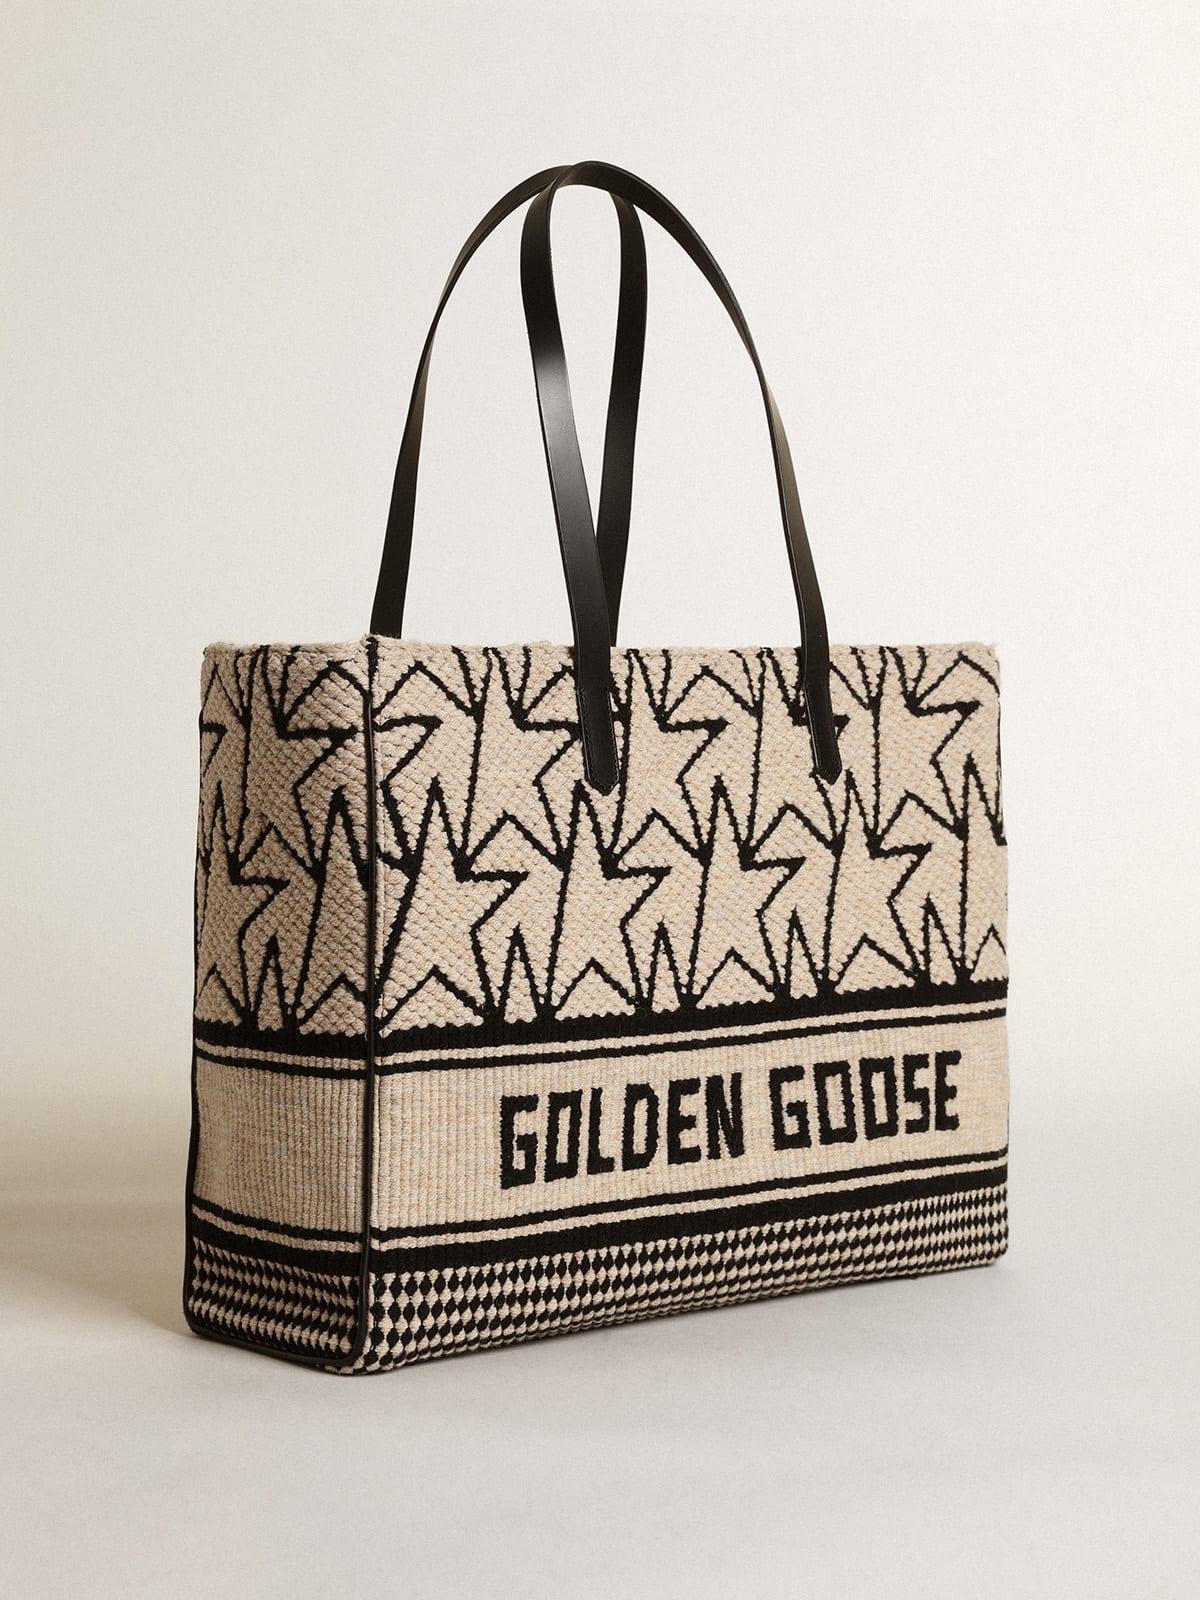 Golden Goose - レディース California Bag イースト・ウェスト ミルクホワイト ジャカードウール in 